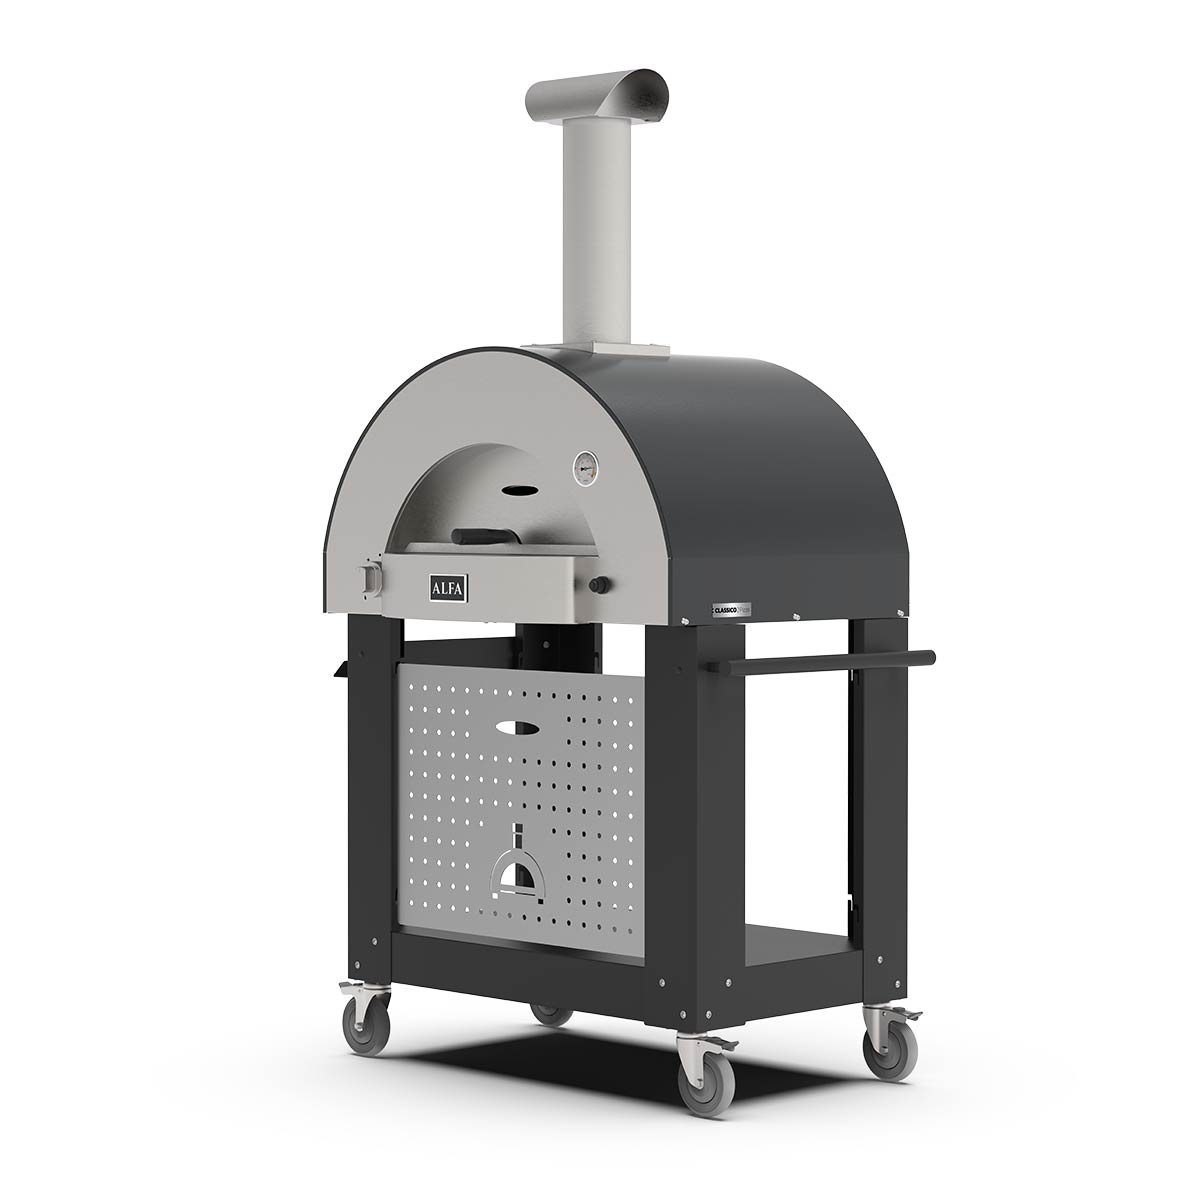 Classico Oven 2 Pizzas - Oven for home use | Alfaforni